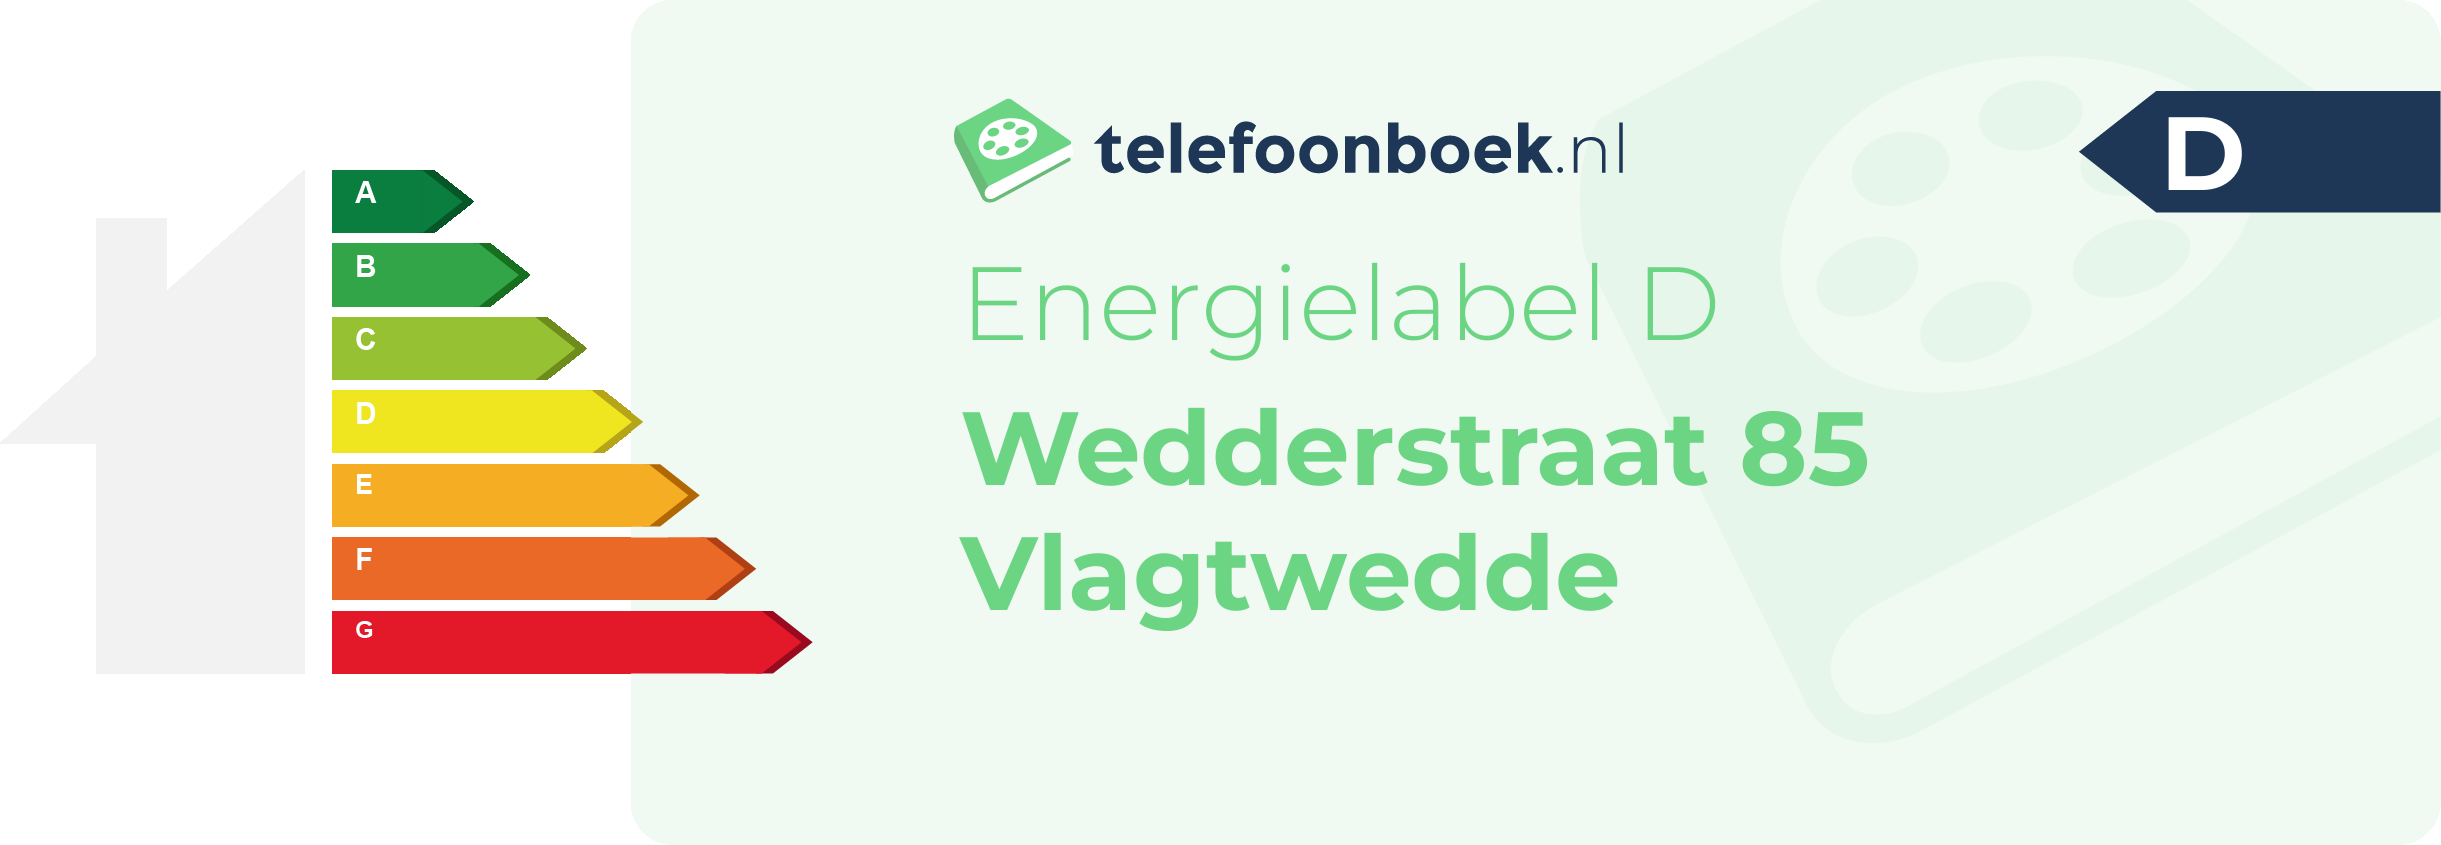 Energielabel Wedderstraat 85 Vlagtwedde